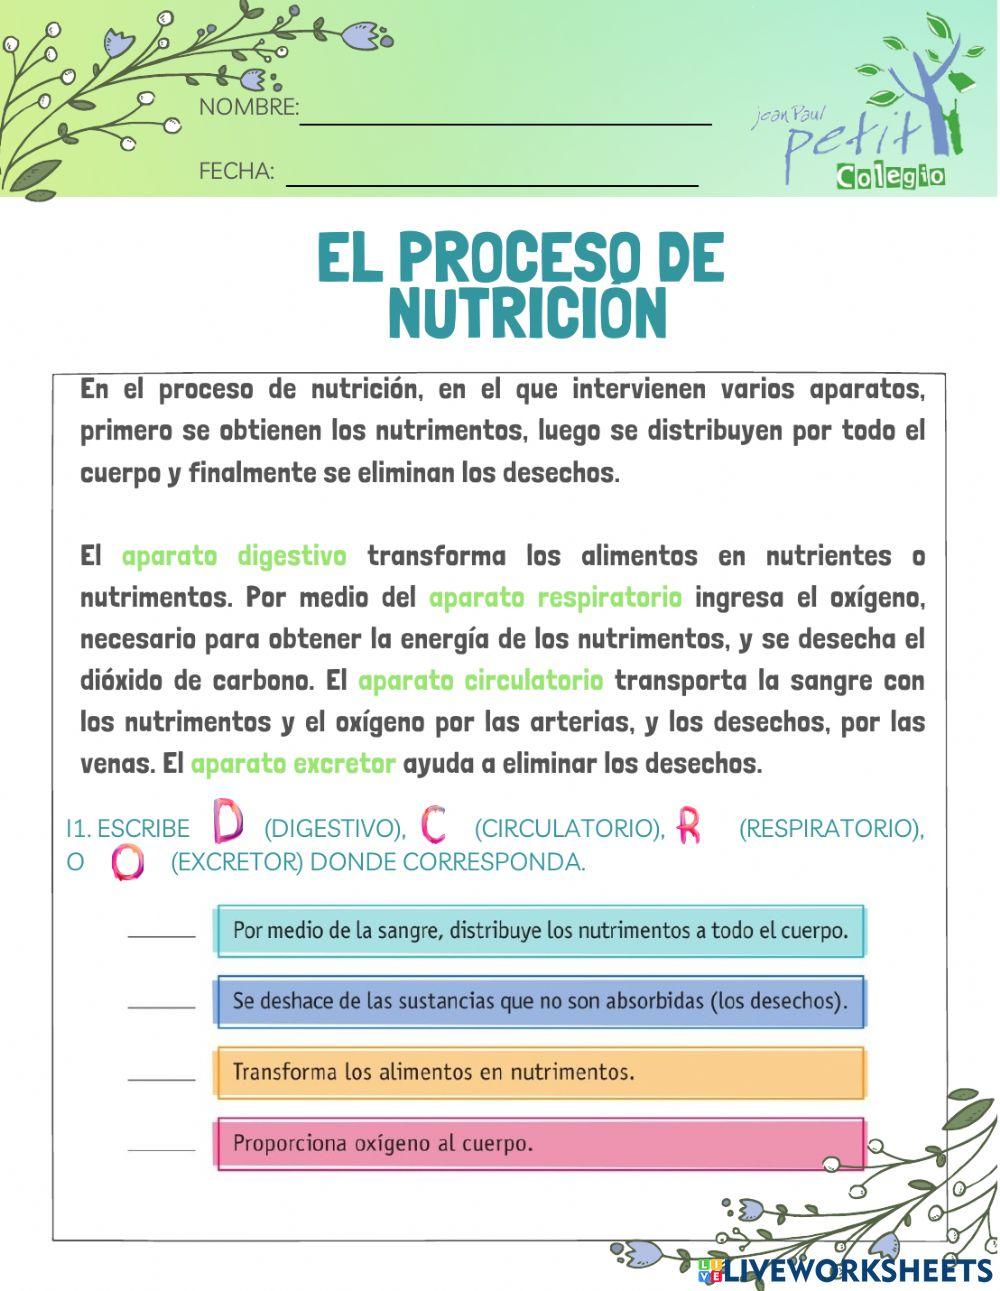 El proceso de nutrición